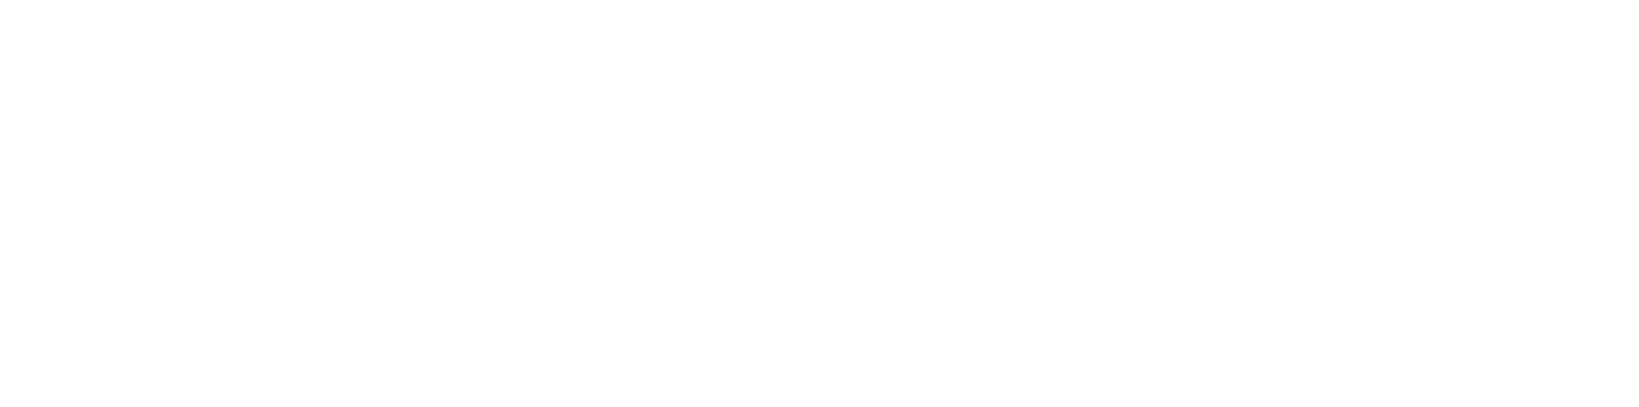 Fluence Energy logo grand pour les fonds sombres (PNG transparent)